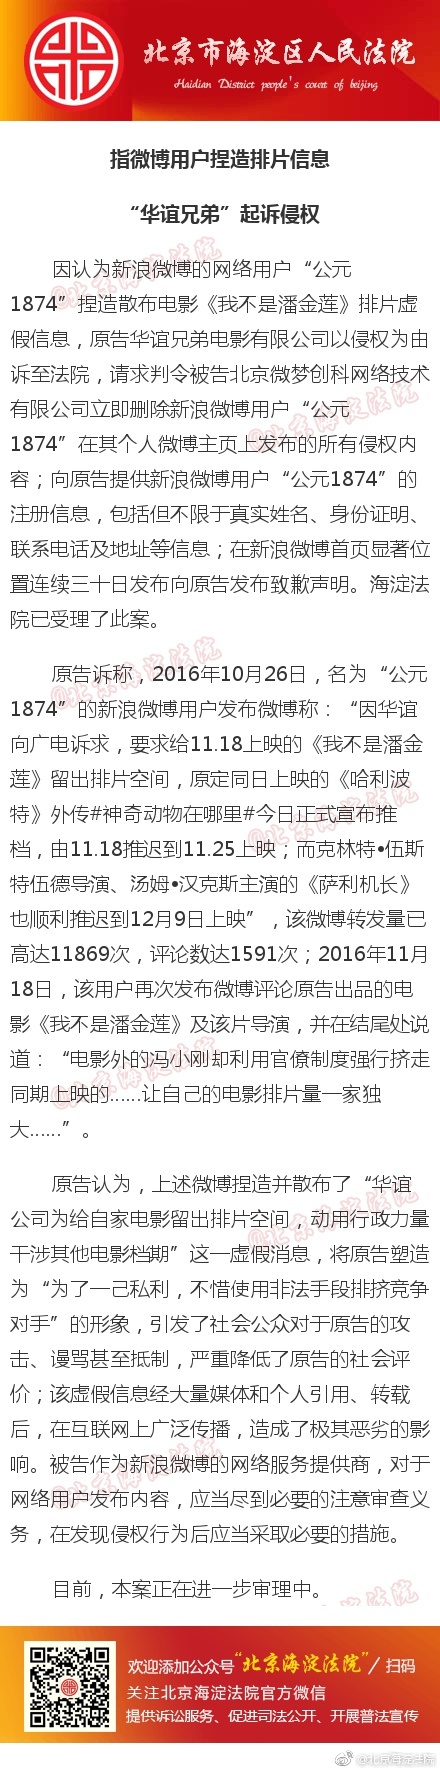 北京海淀法院通报称已受理华谊兄弟电影公司的侵权诉讼